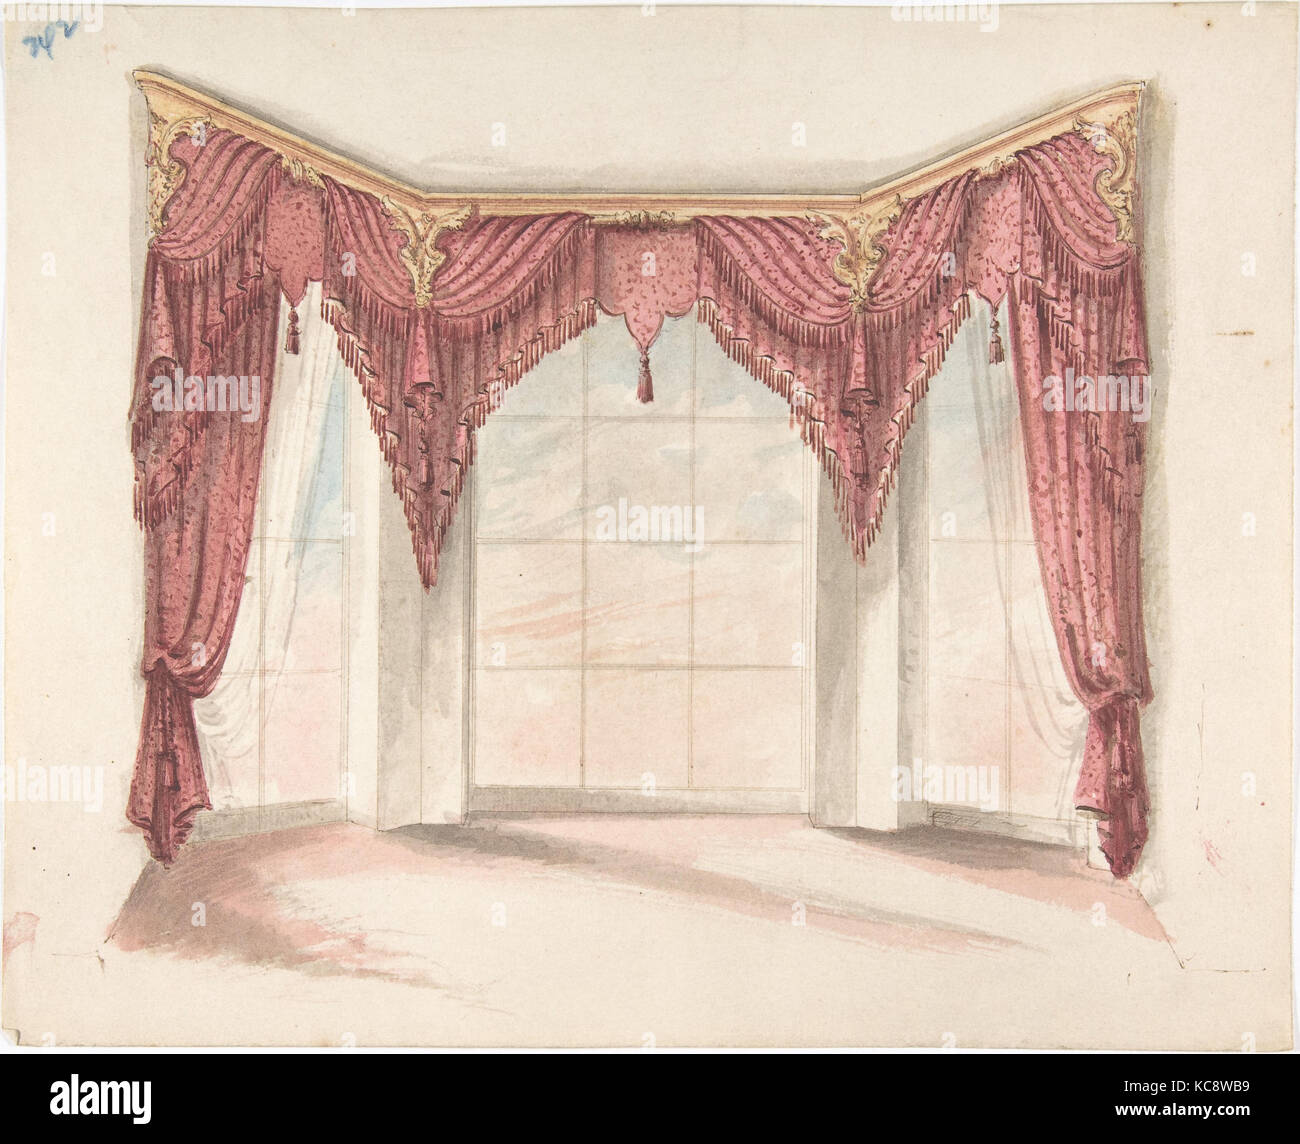 Pour la conception de rideaux rouge avec franges rouges et un fronton d'or, anonyme, britannique, 19ème siècle, début du xixe siècle Banque D'Images